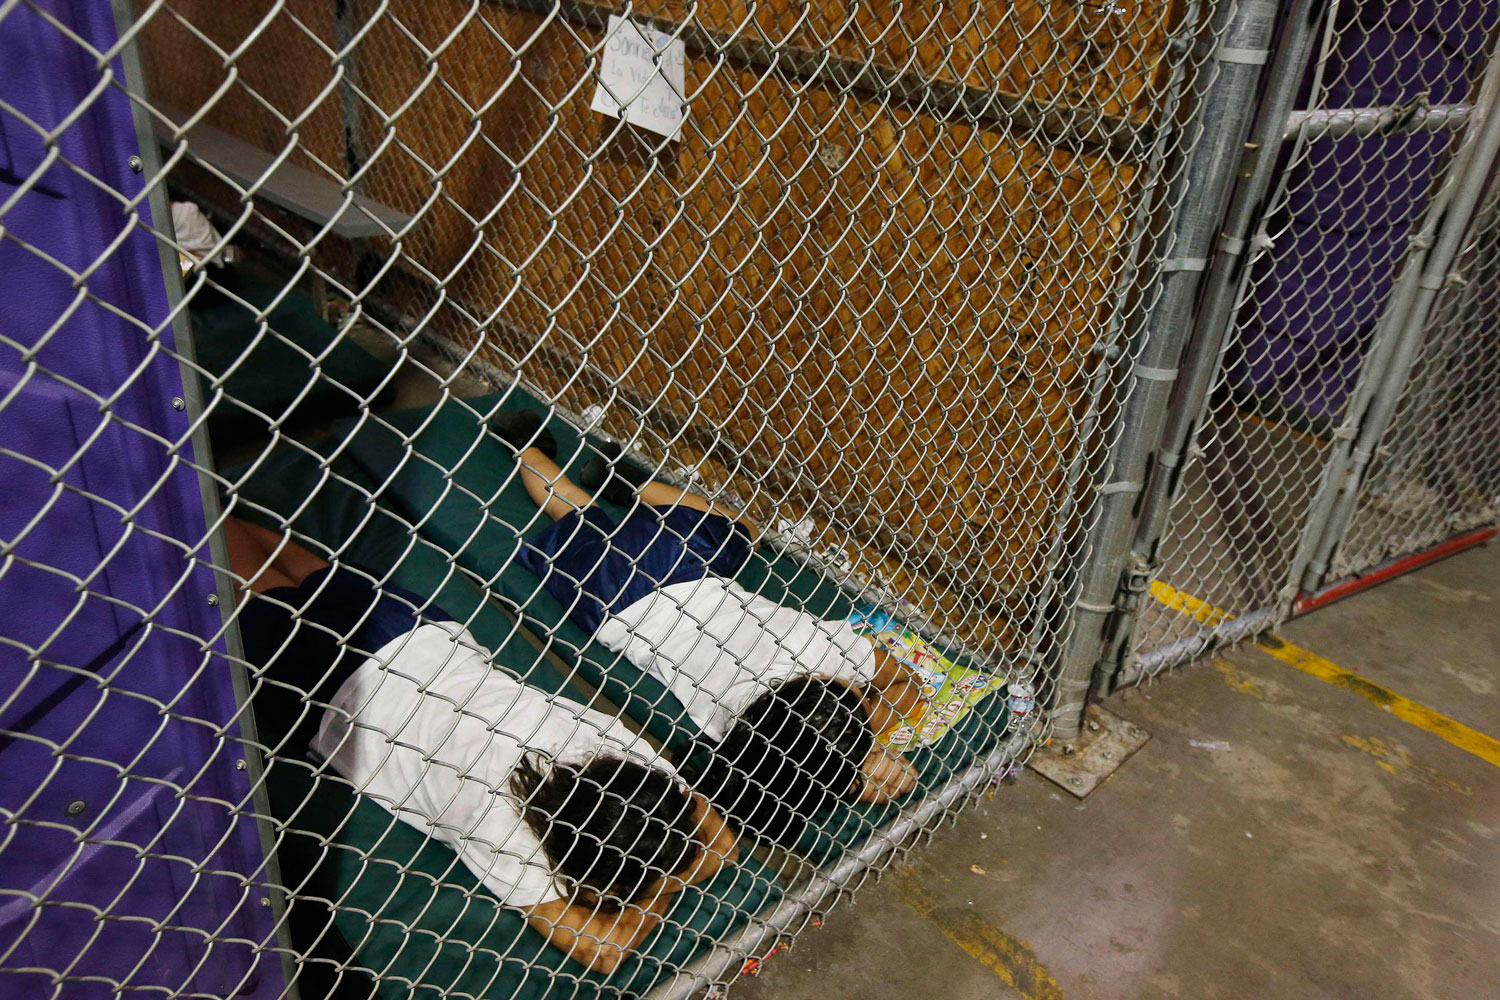 Miles de menores que cruzaron la frontera esperan, hacinados en celdas, ser transferidos a refugios